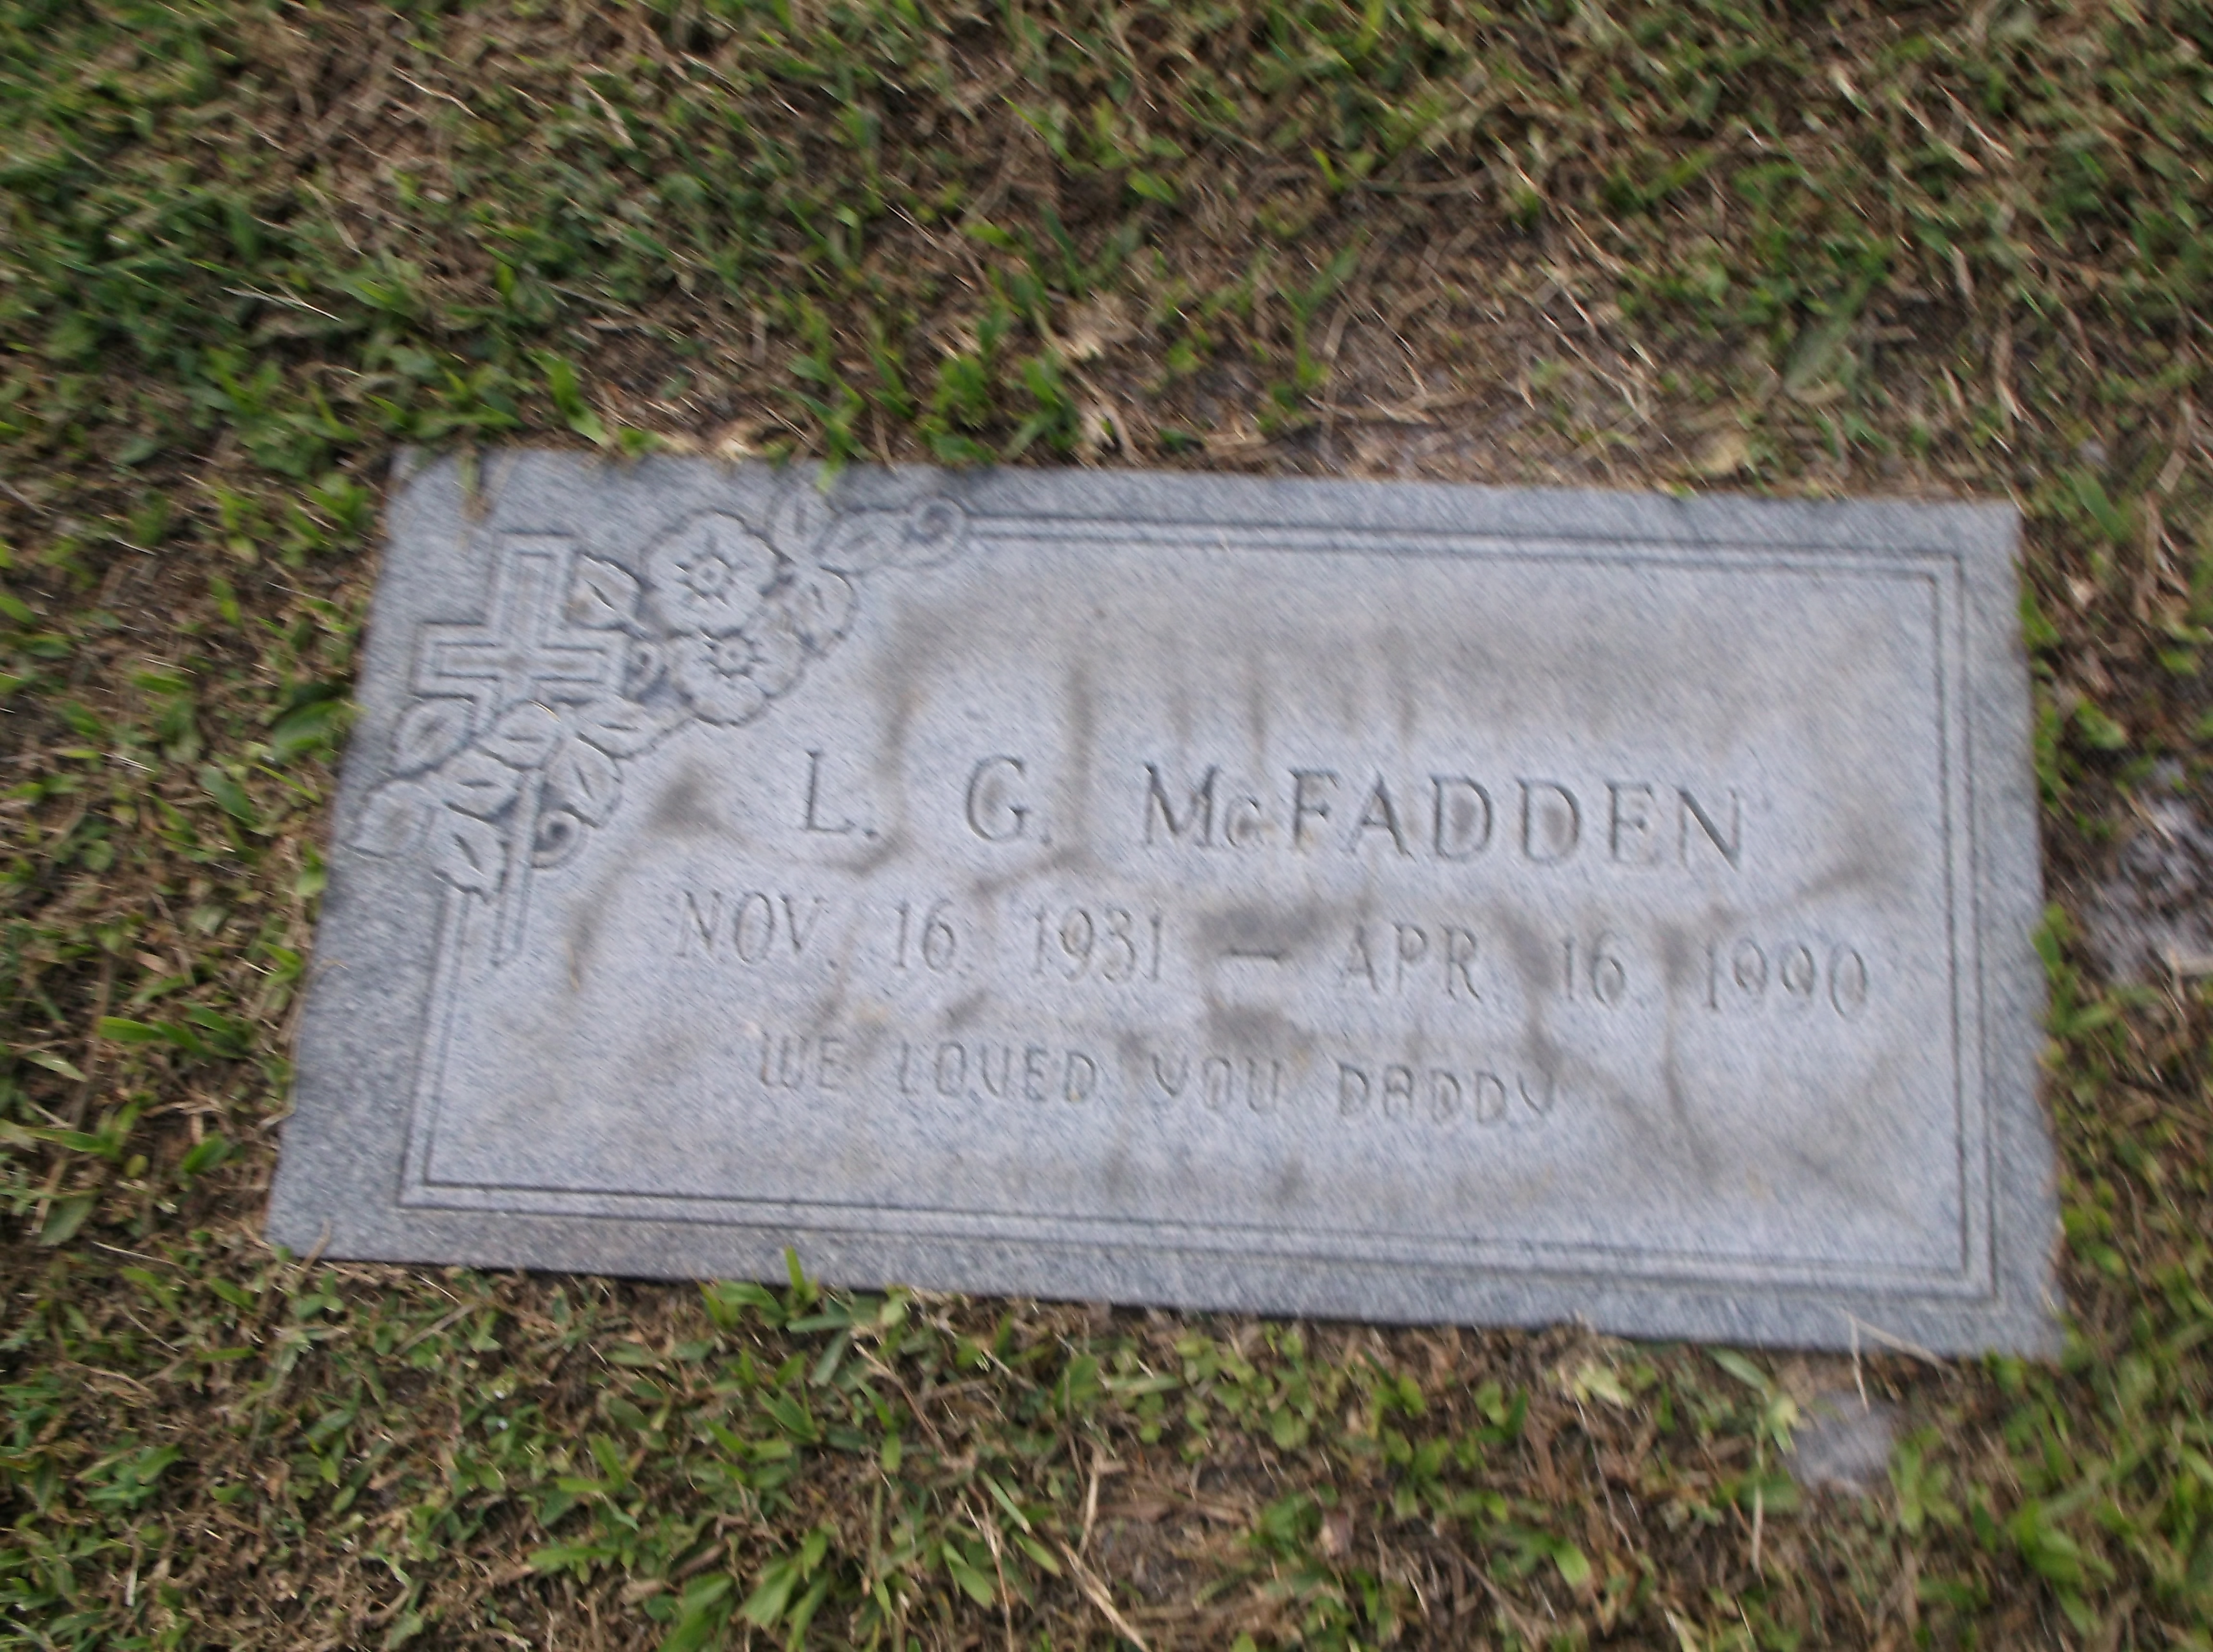 L G McFadden